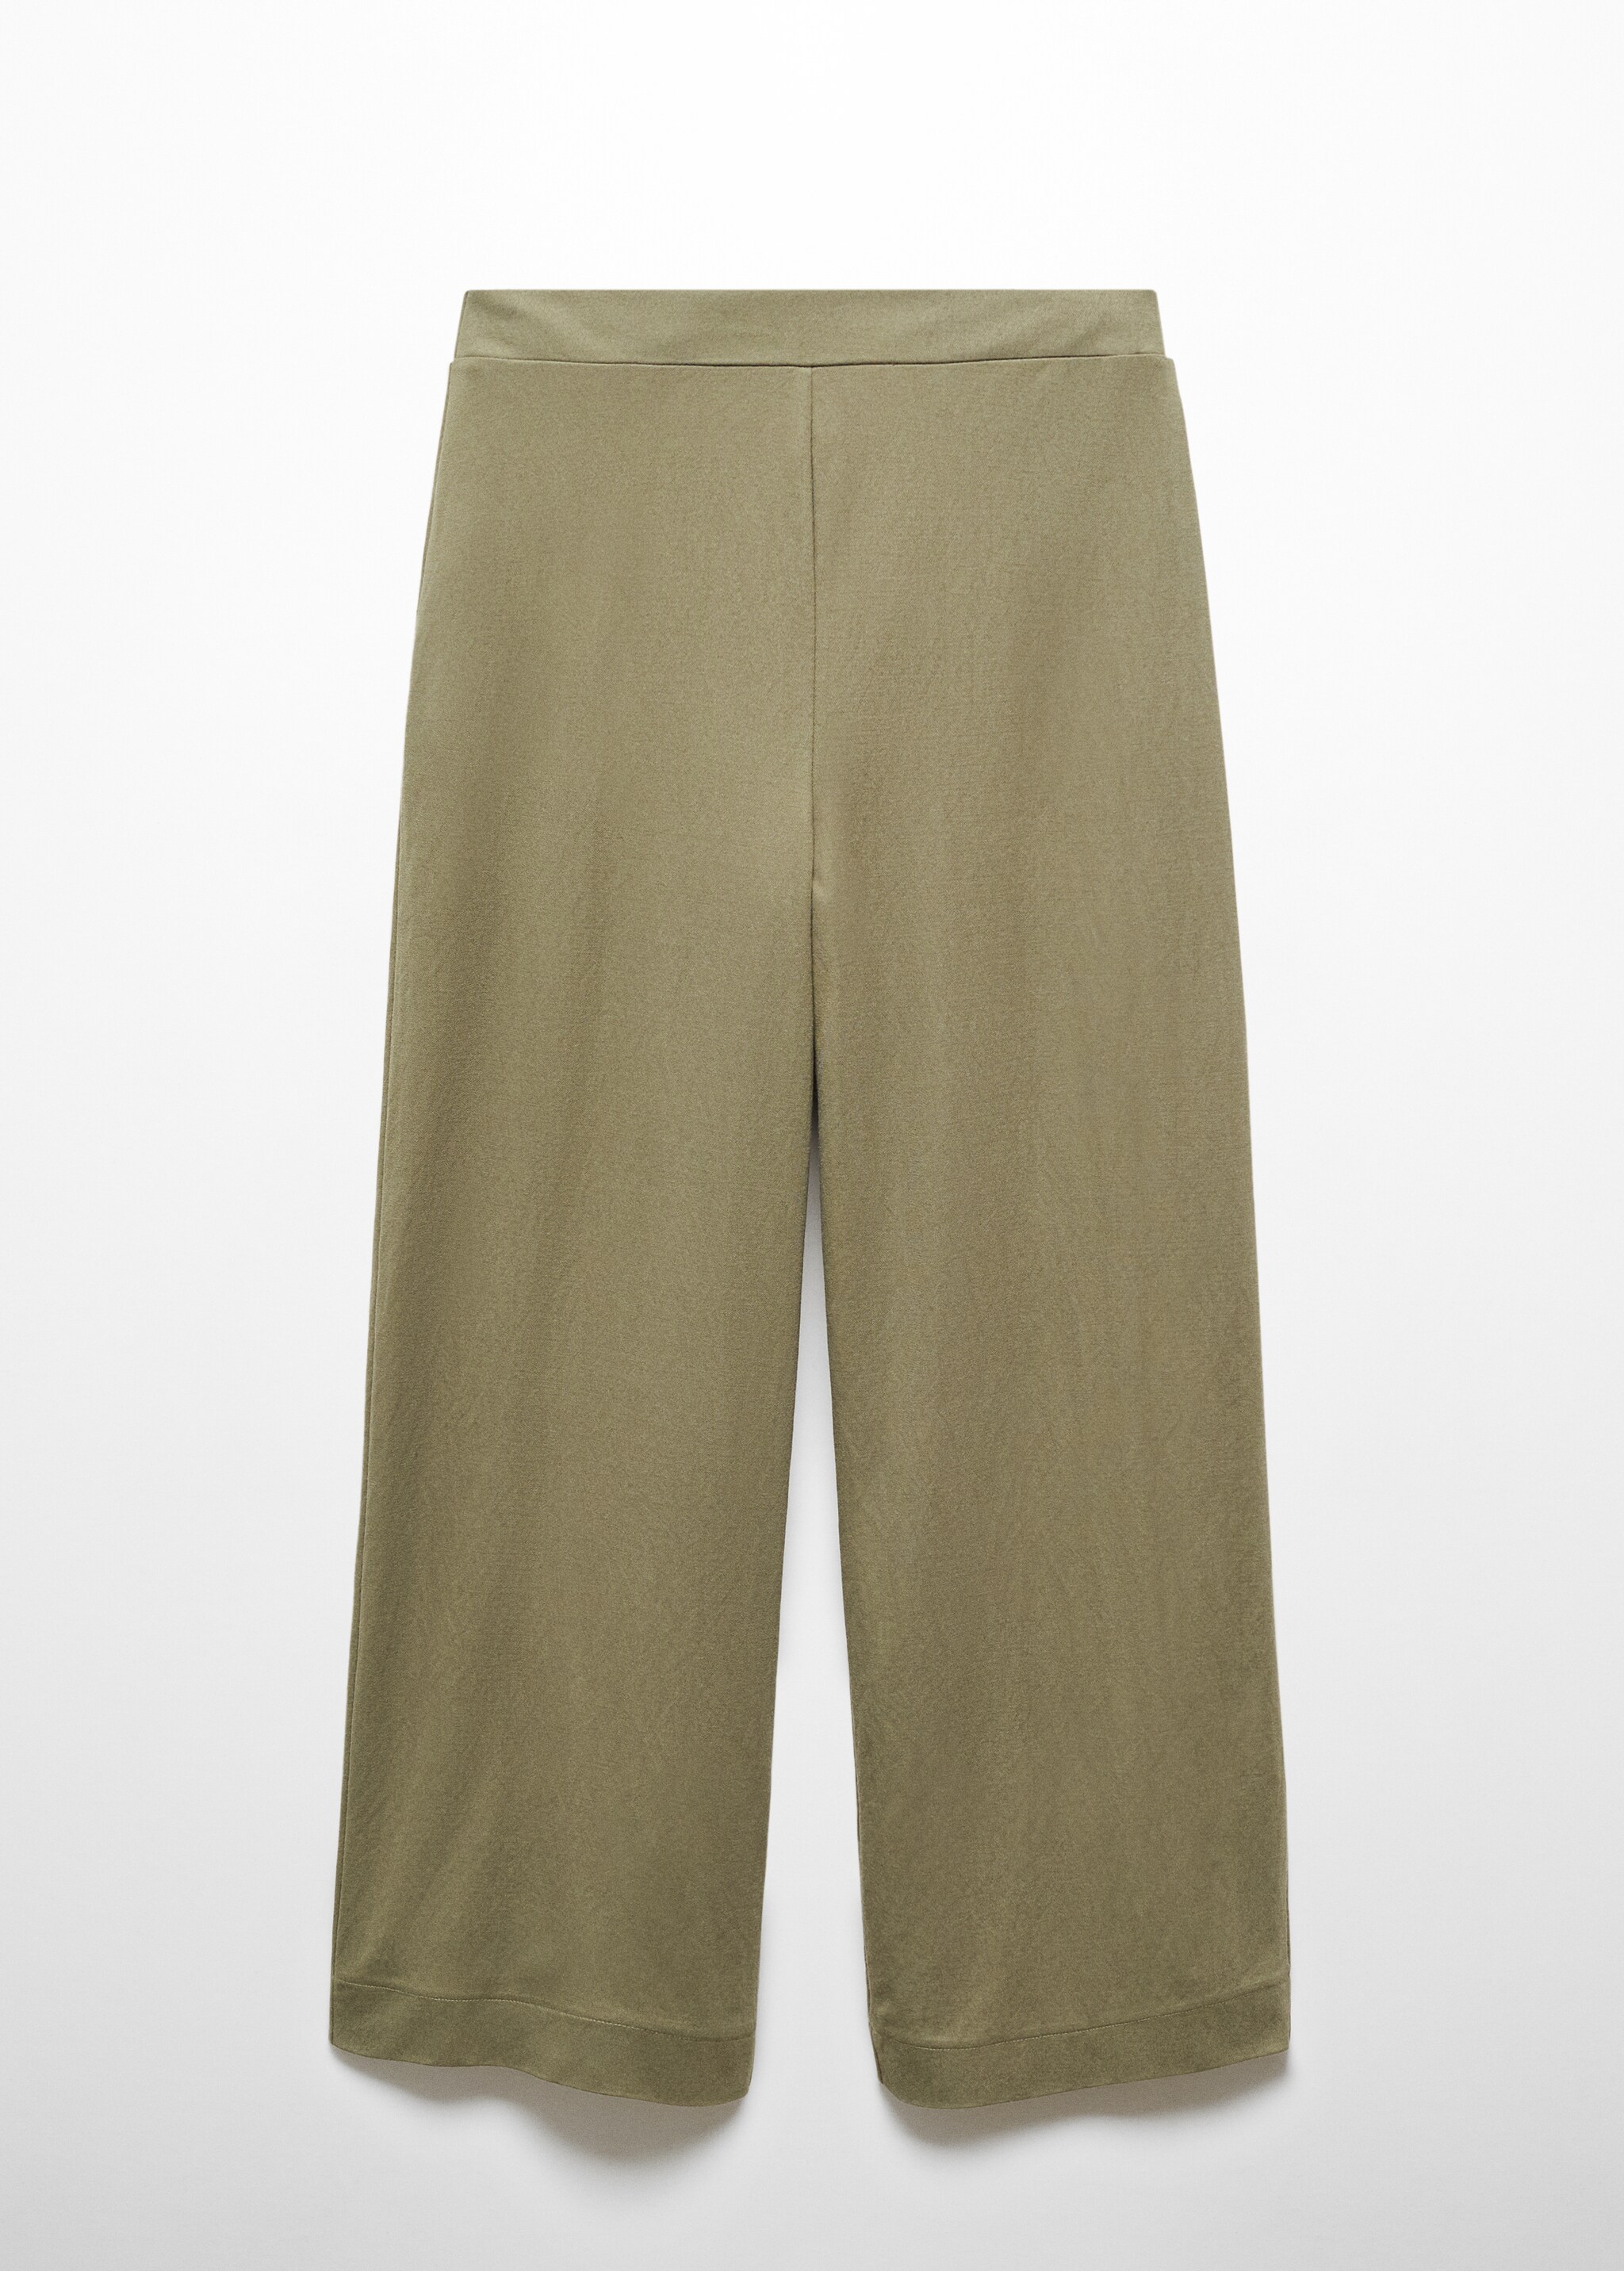 Pantalón crop cintura elástica - Artículo sin modelo